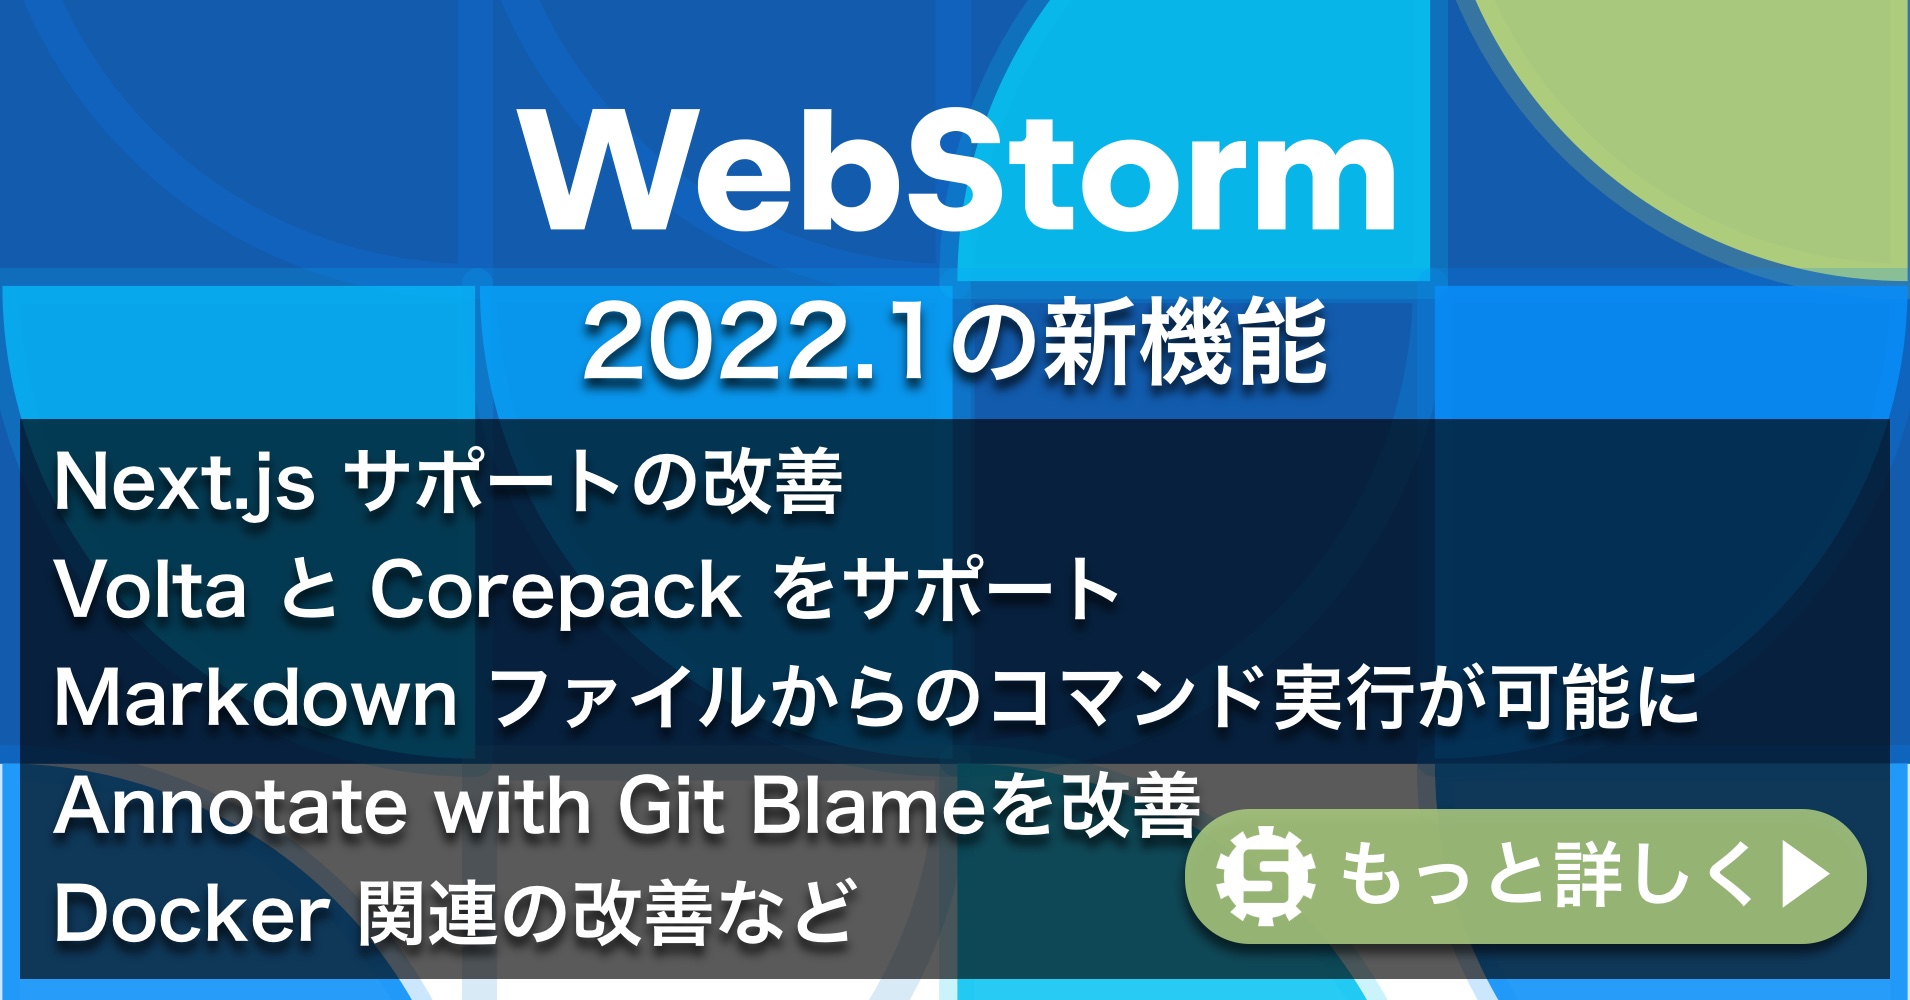 WebStorm 2022.1の新機能